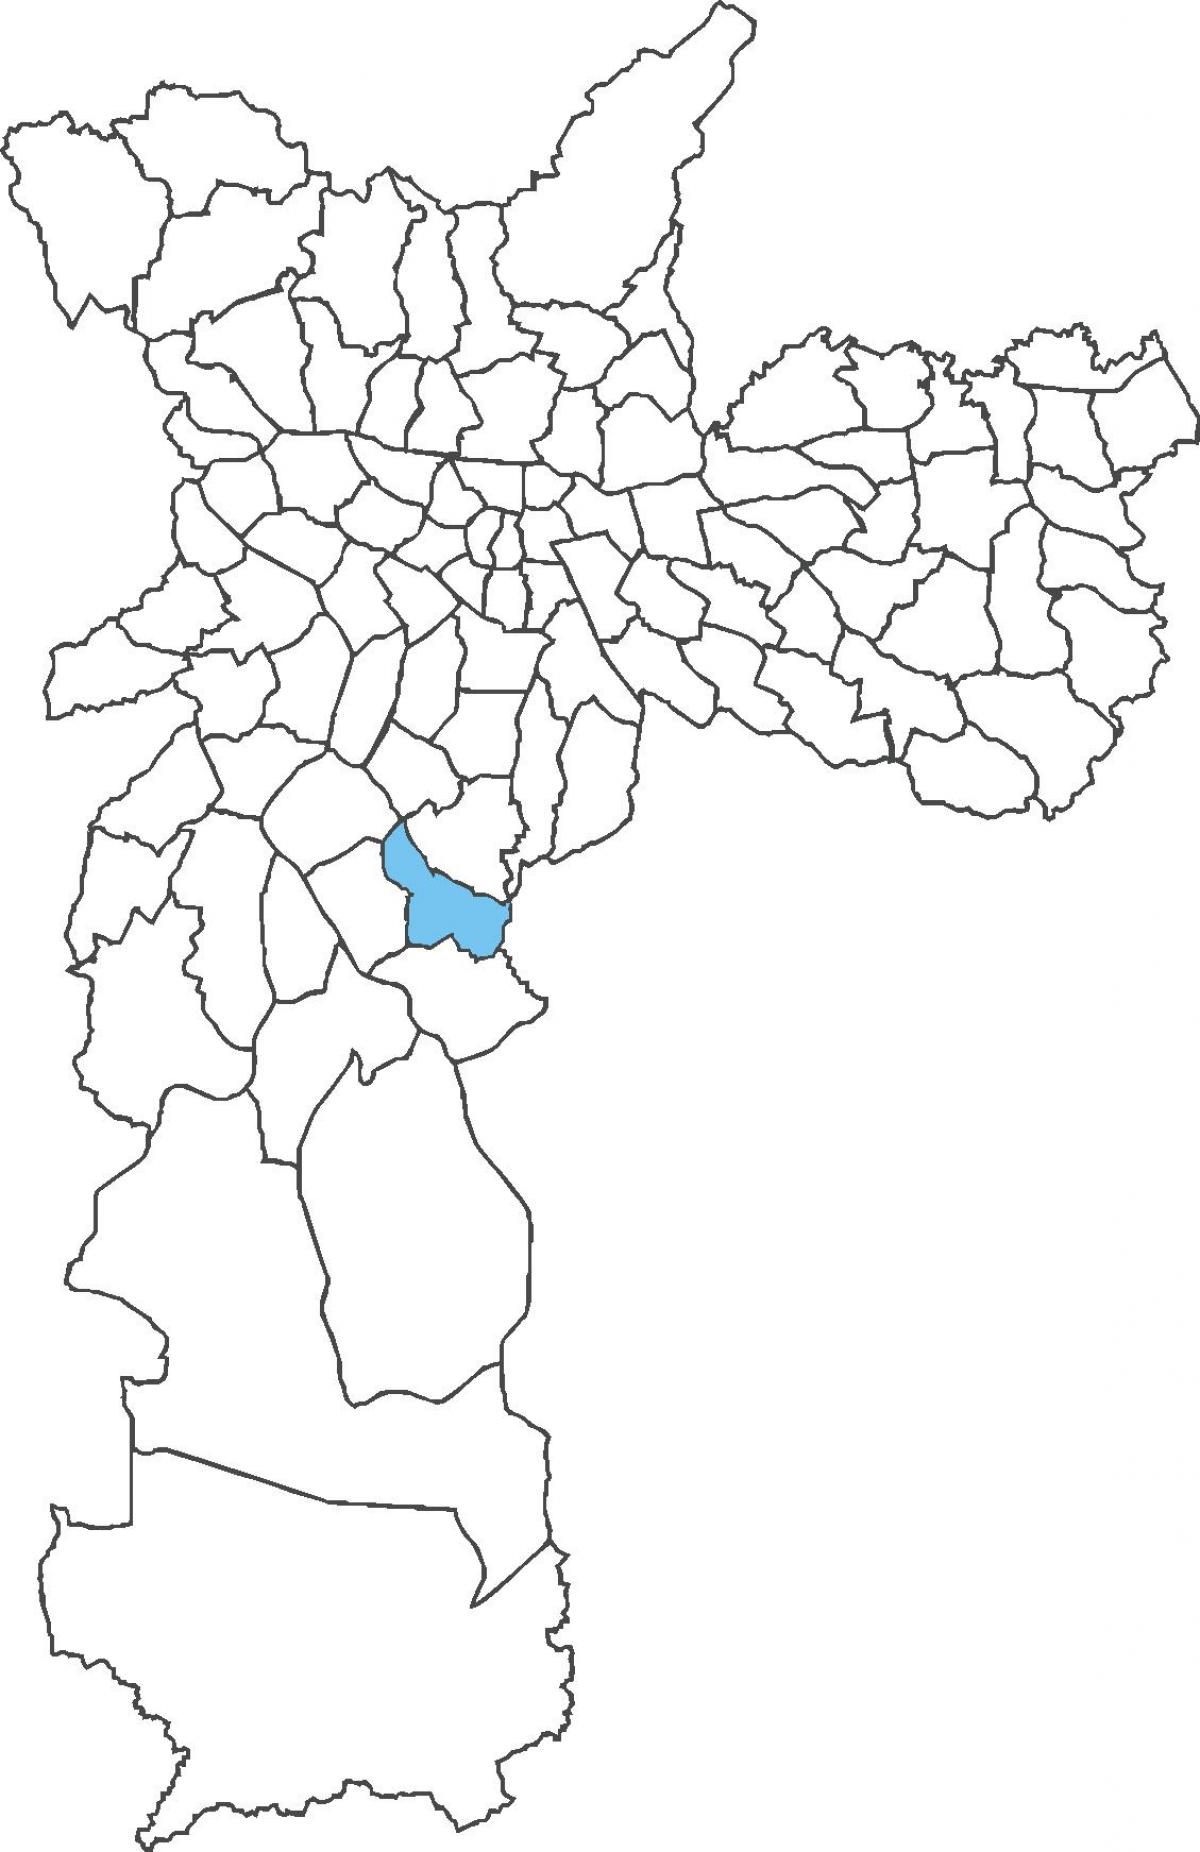 মানচিত্র এর Cidade Ademar জেলা